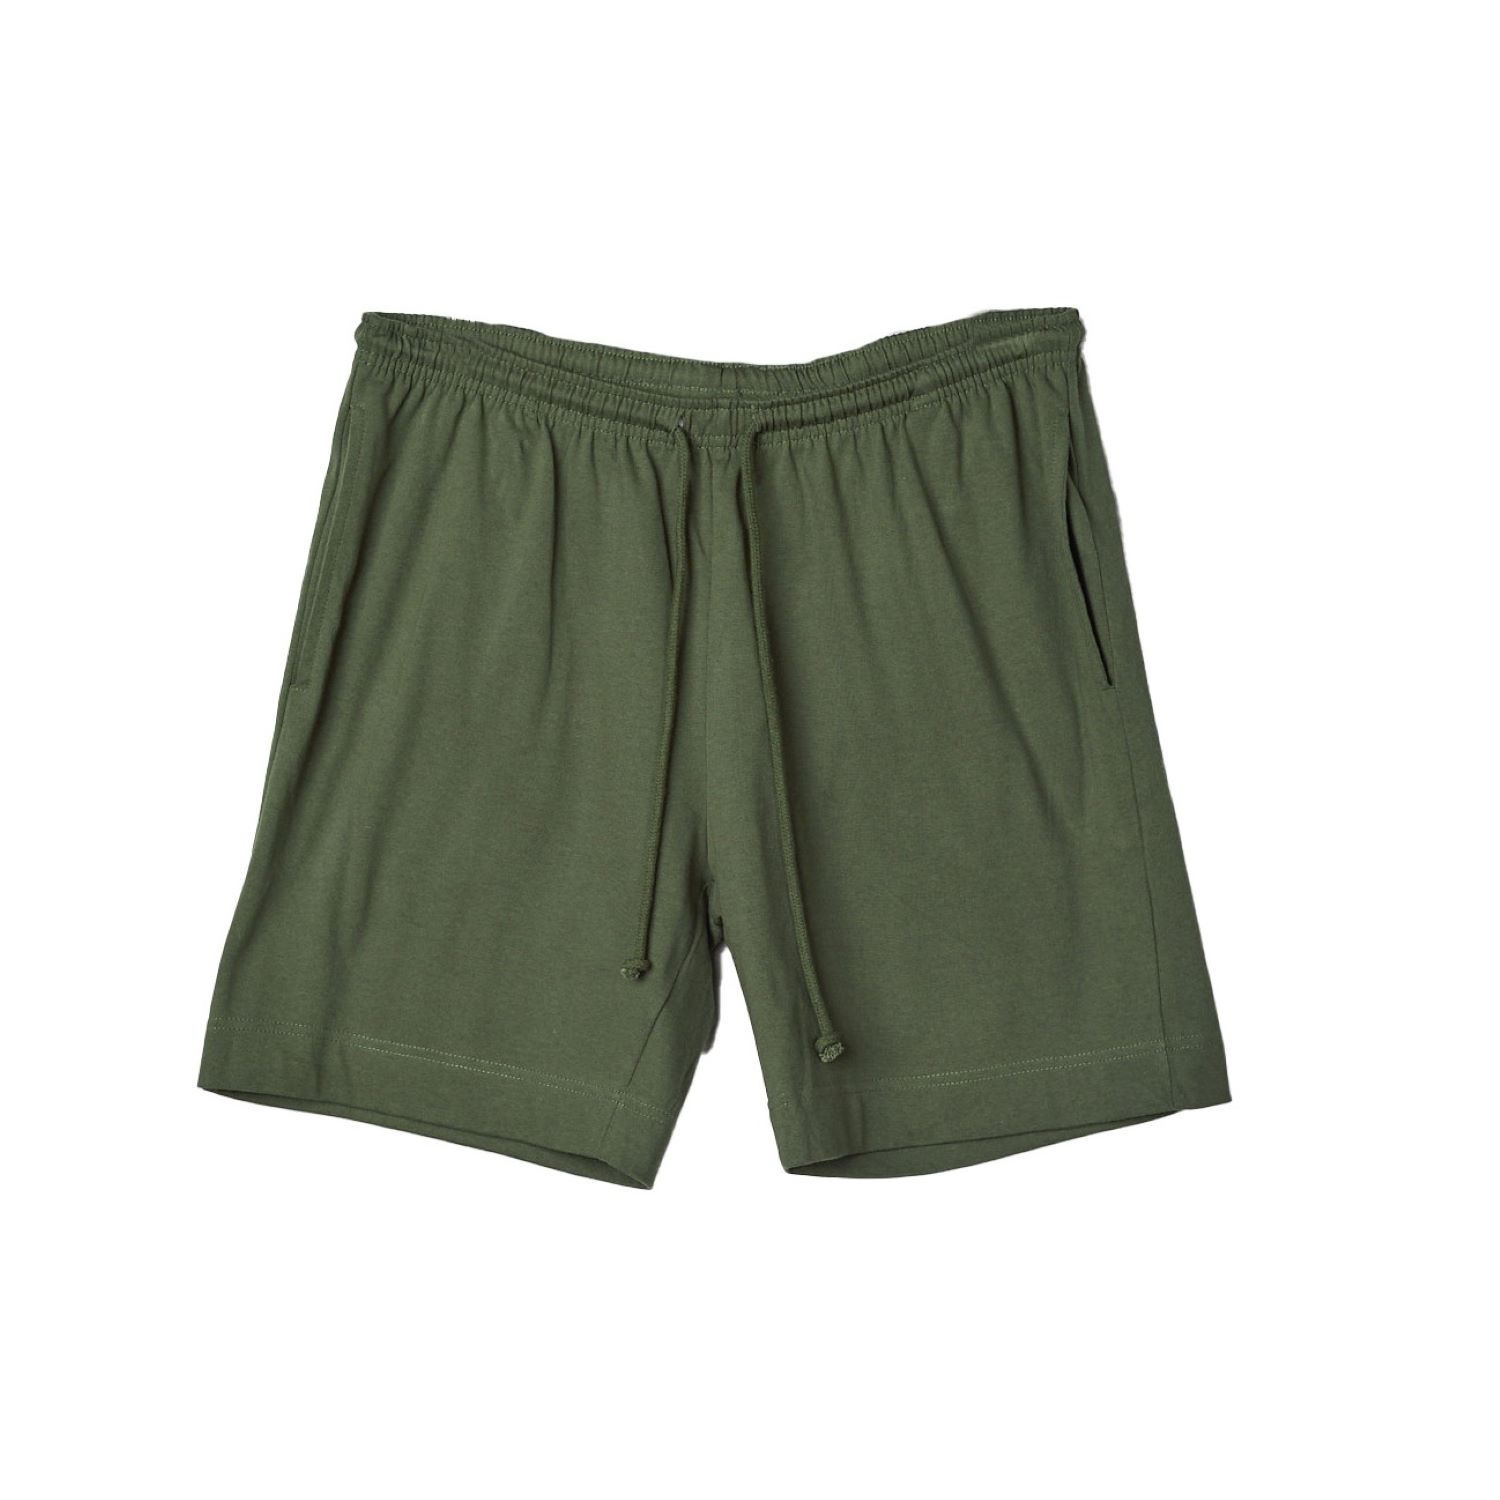 Uskees Men's Green Drawstring Shorts - Coriander